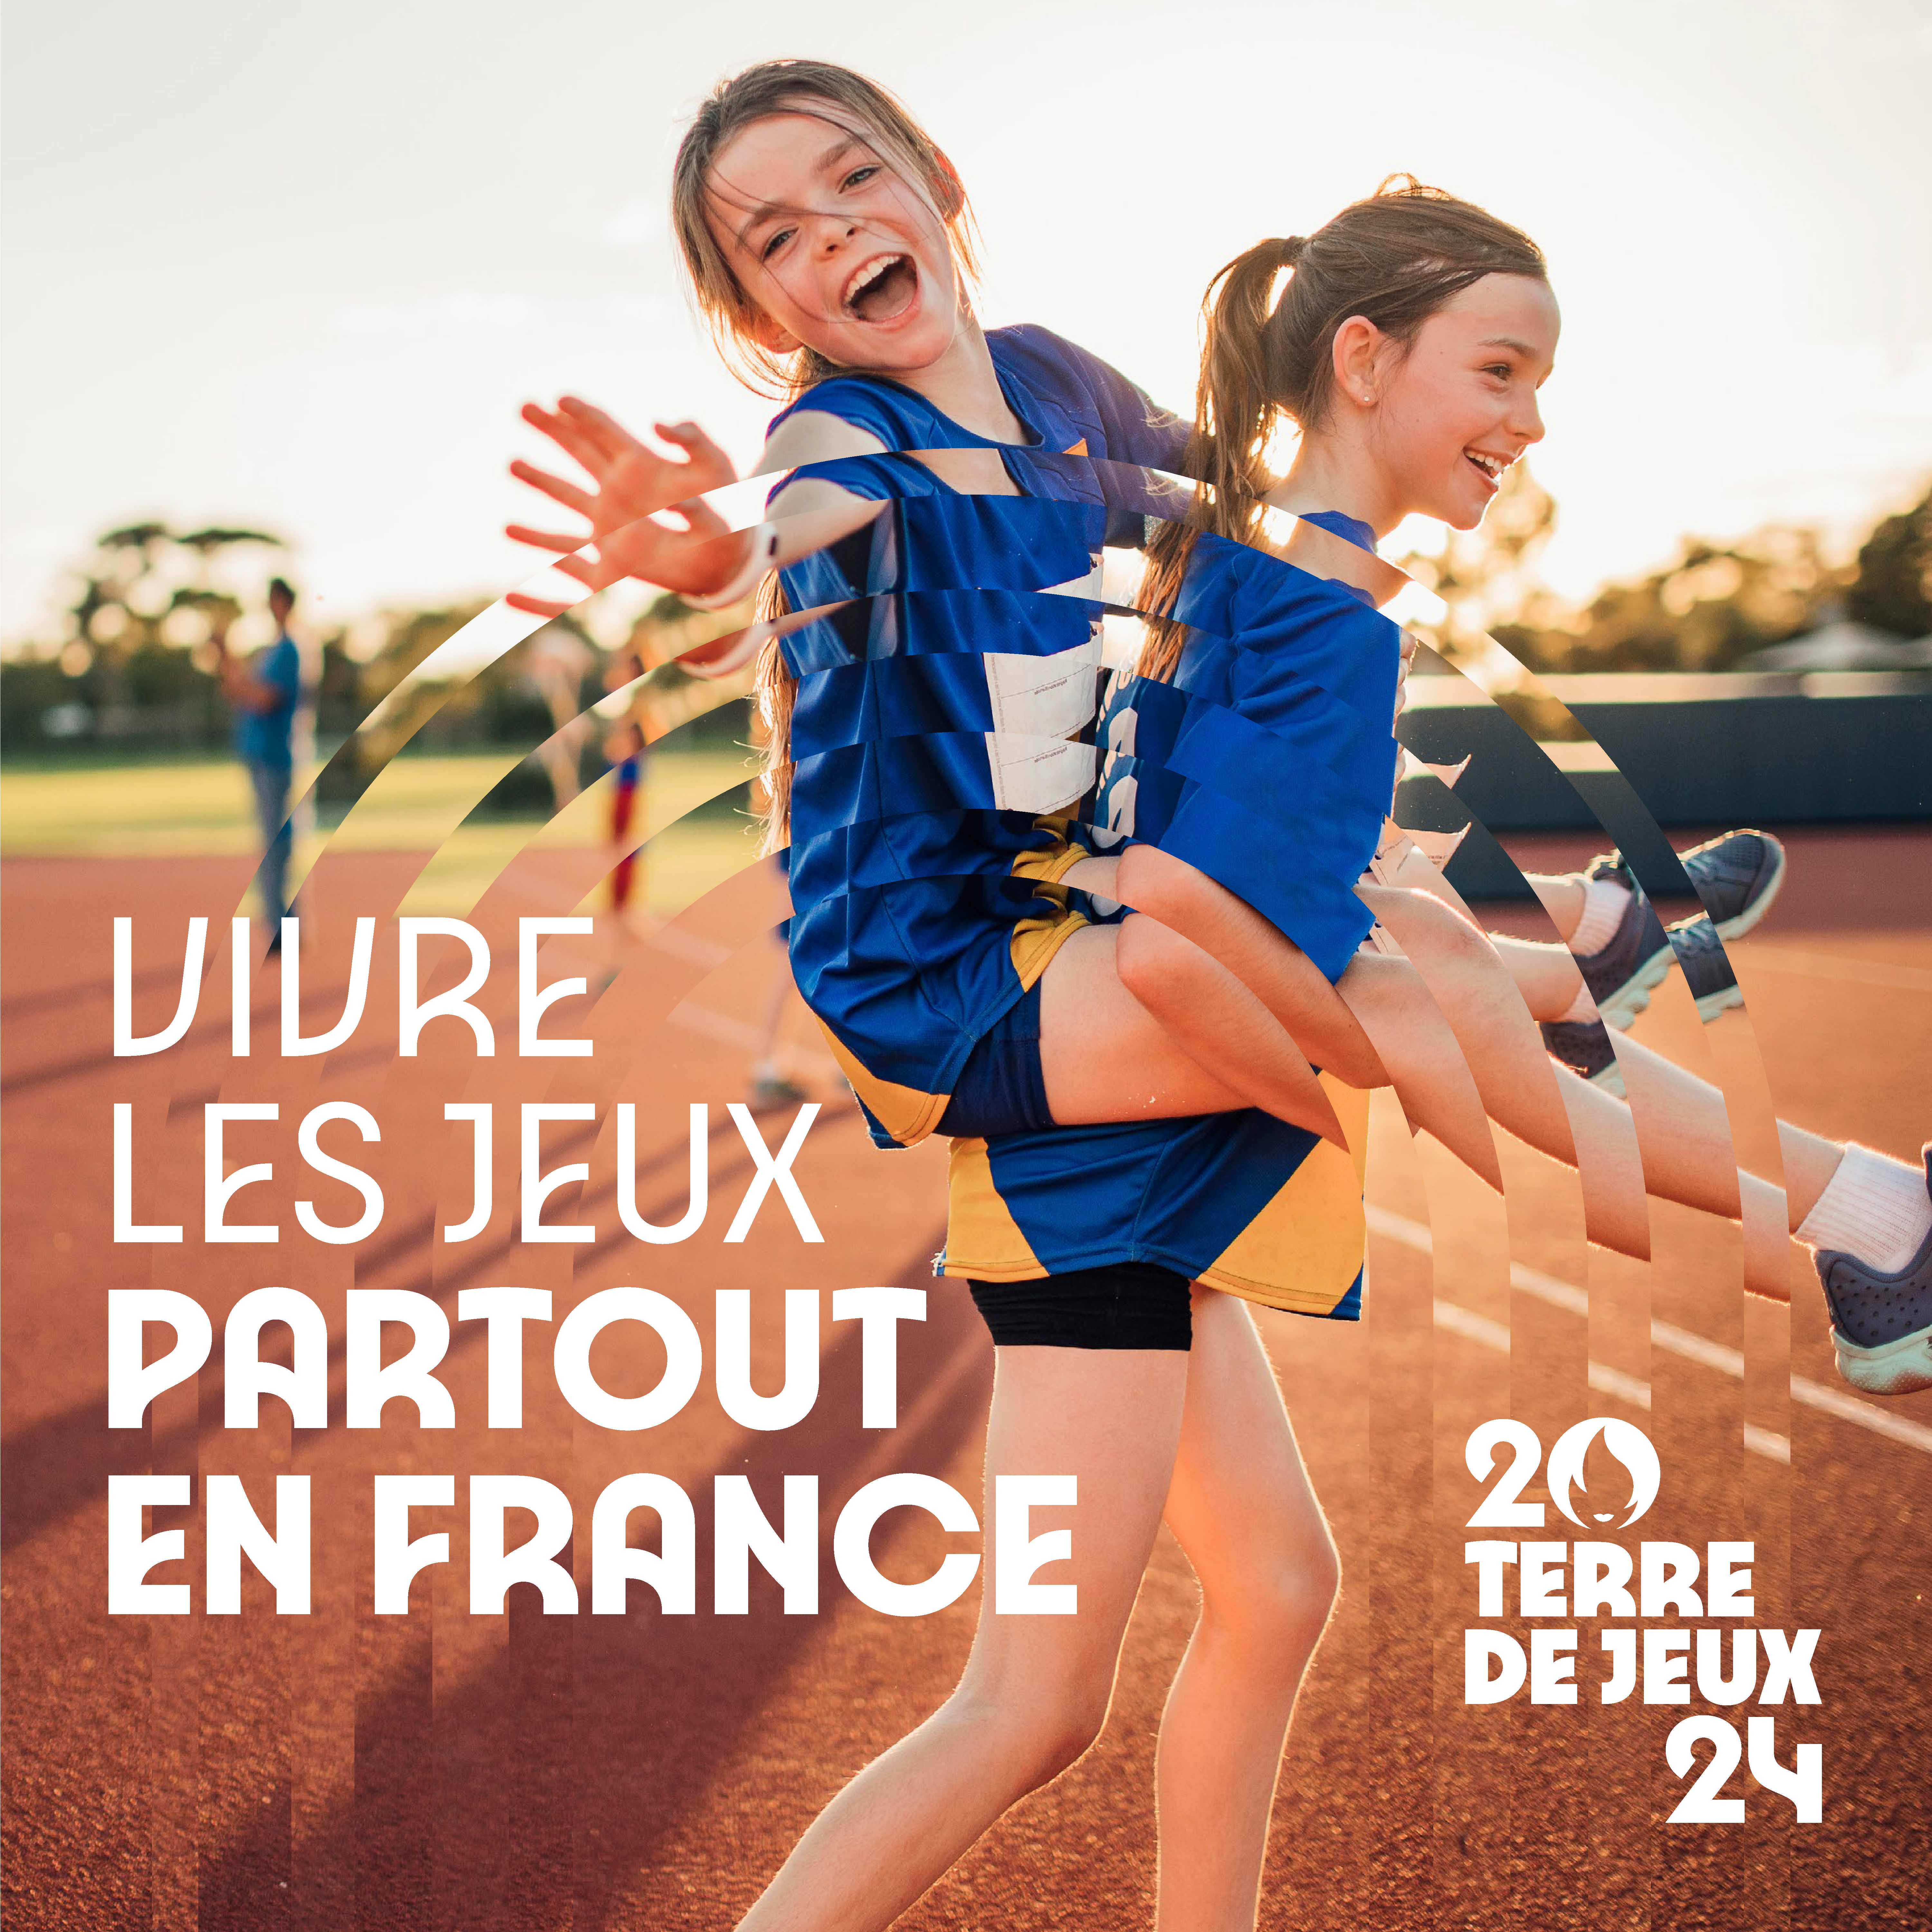 Vivre les Jeux partout en France - Photo.jpg